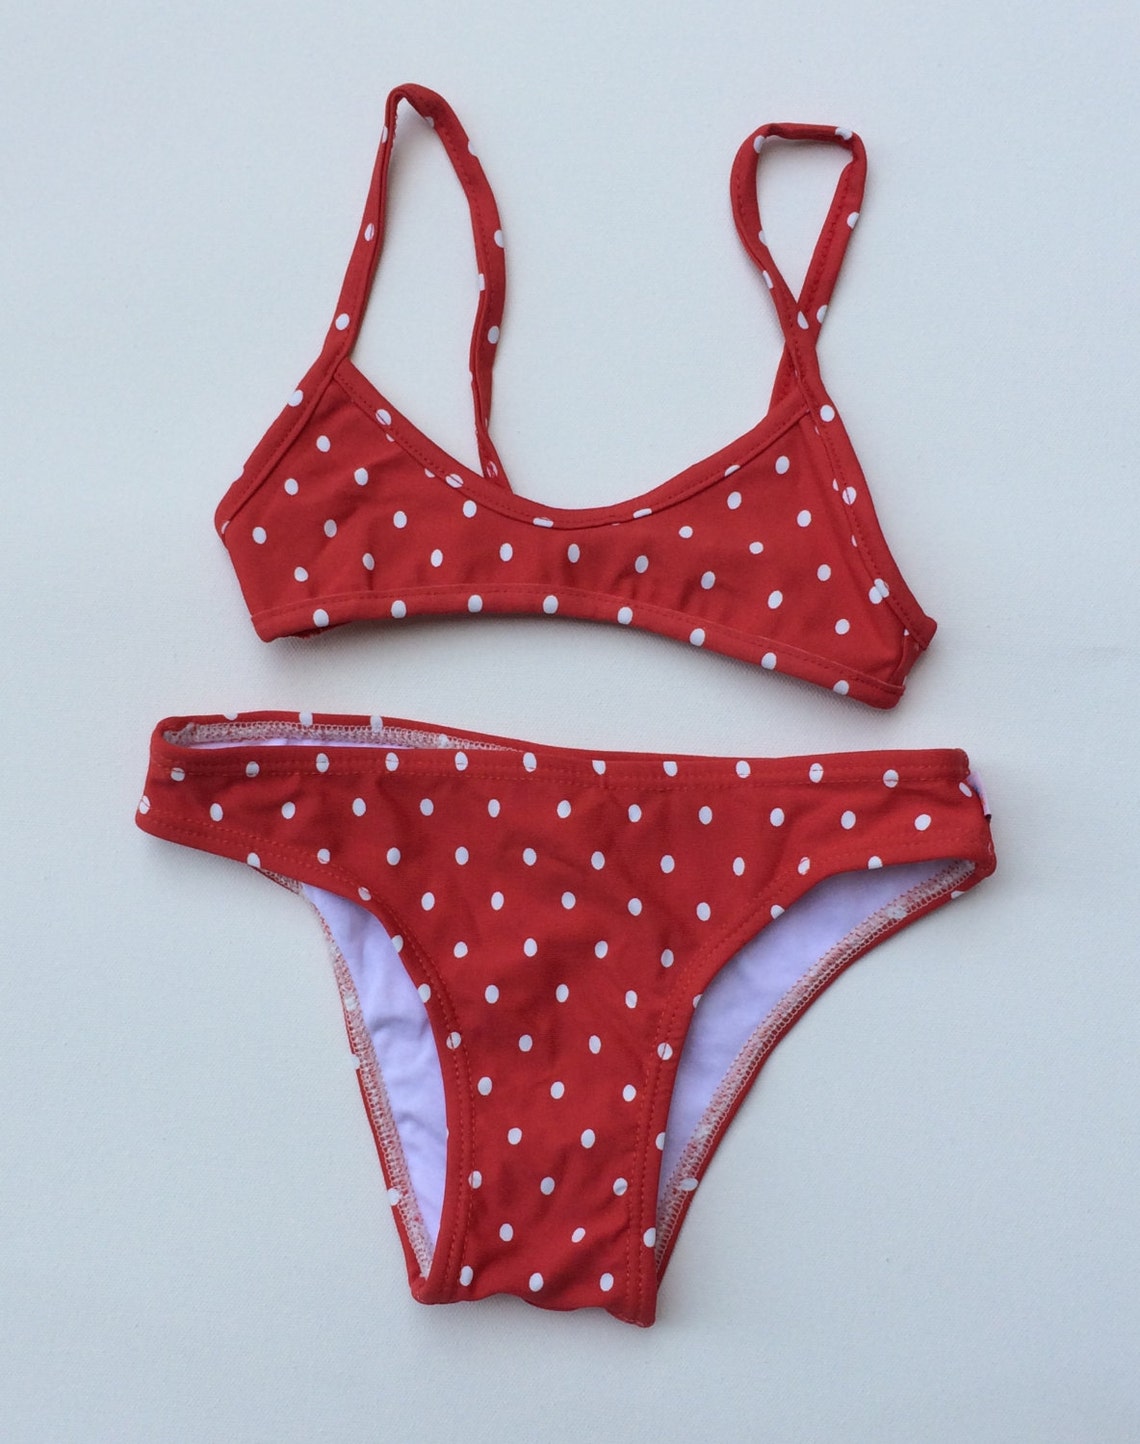 Red Polka Dot Bikini Childrens Size 6 | Etsy